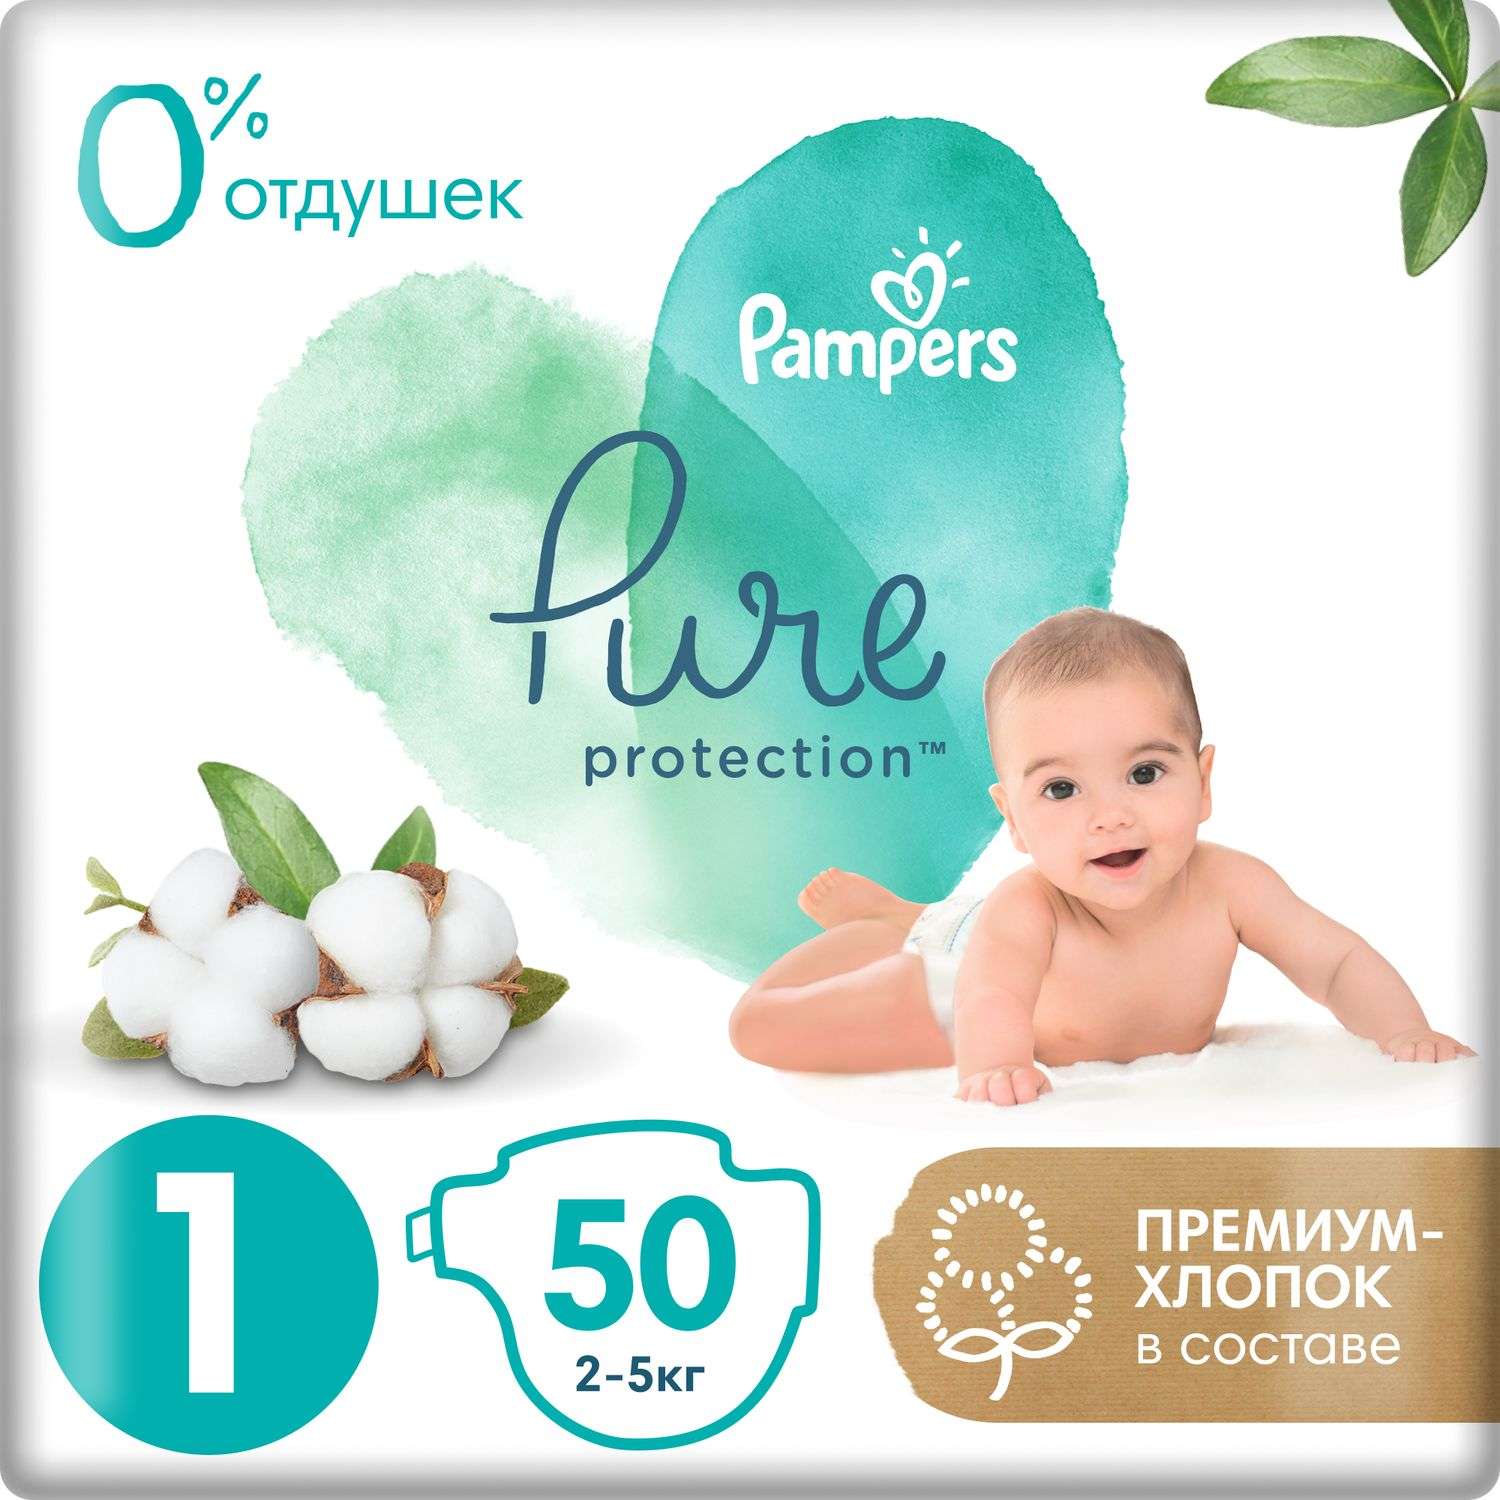 Подгузники Pampers Pure Protection Newborn 2-5кг 50шт - фото 1